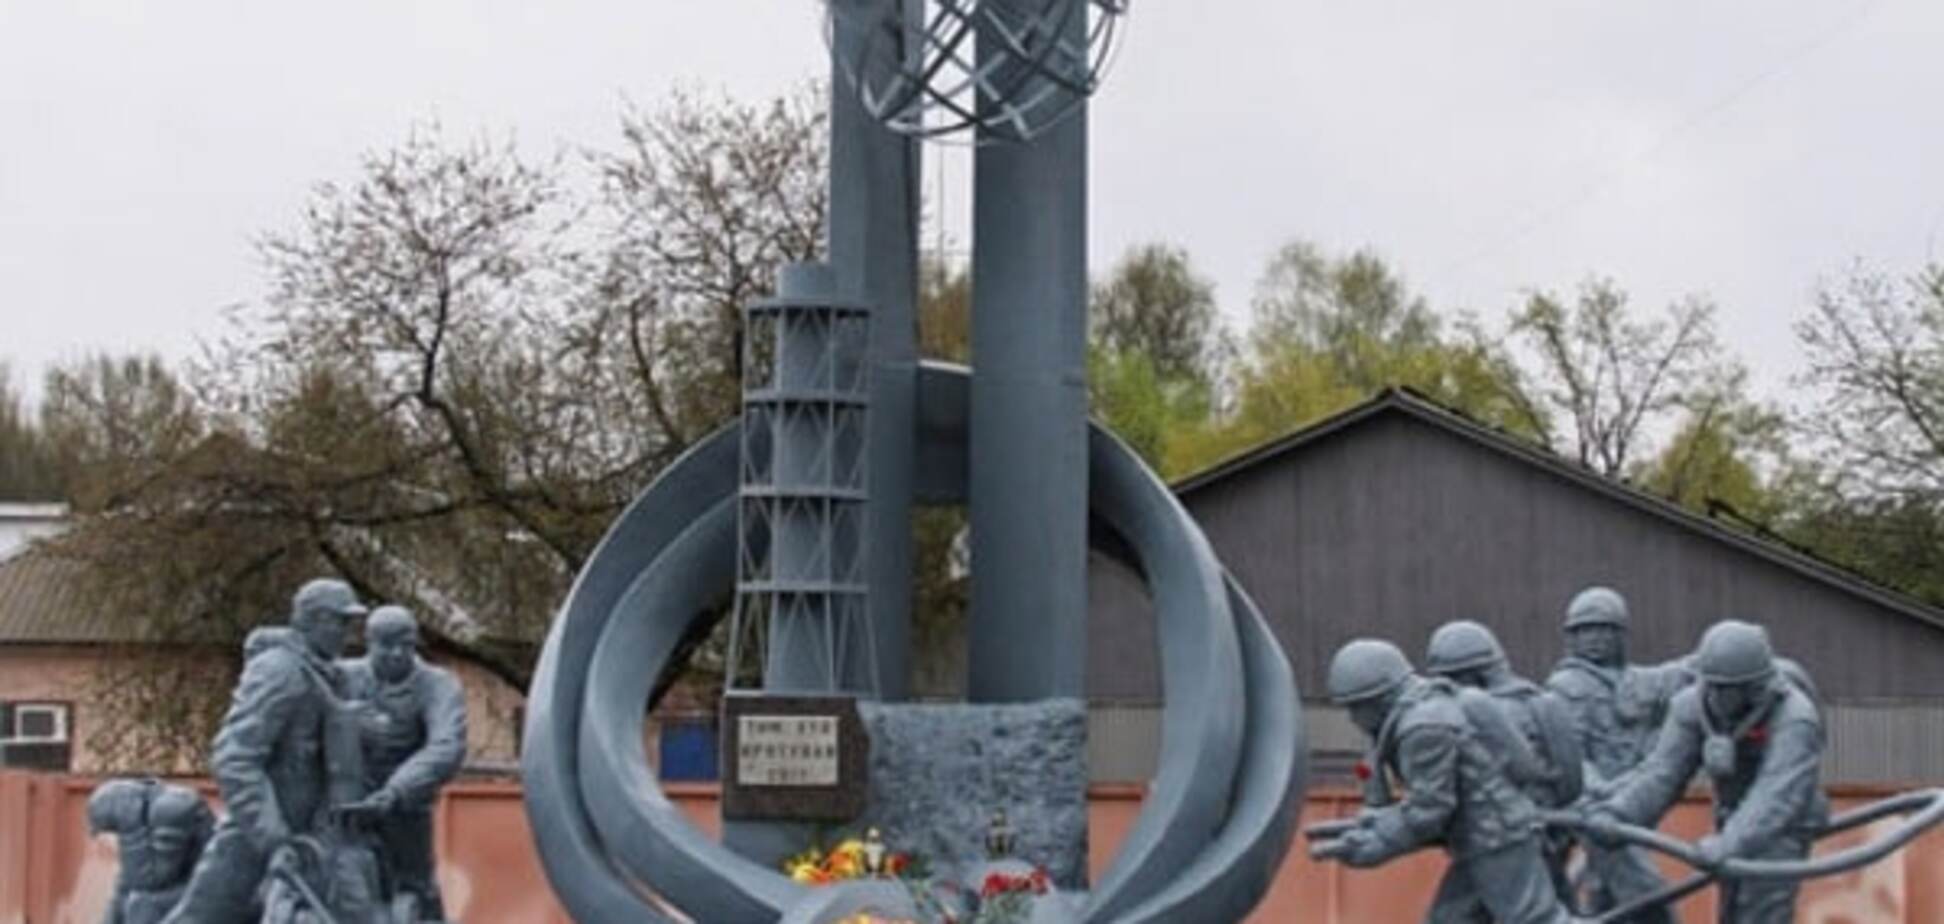 памятник ликвидаторам аварии на ЧАЭС